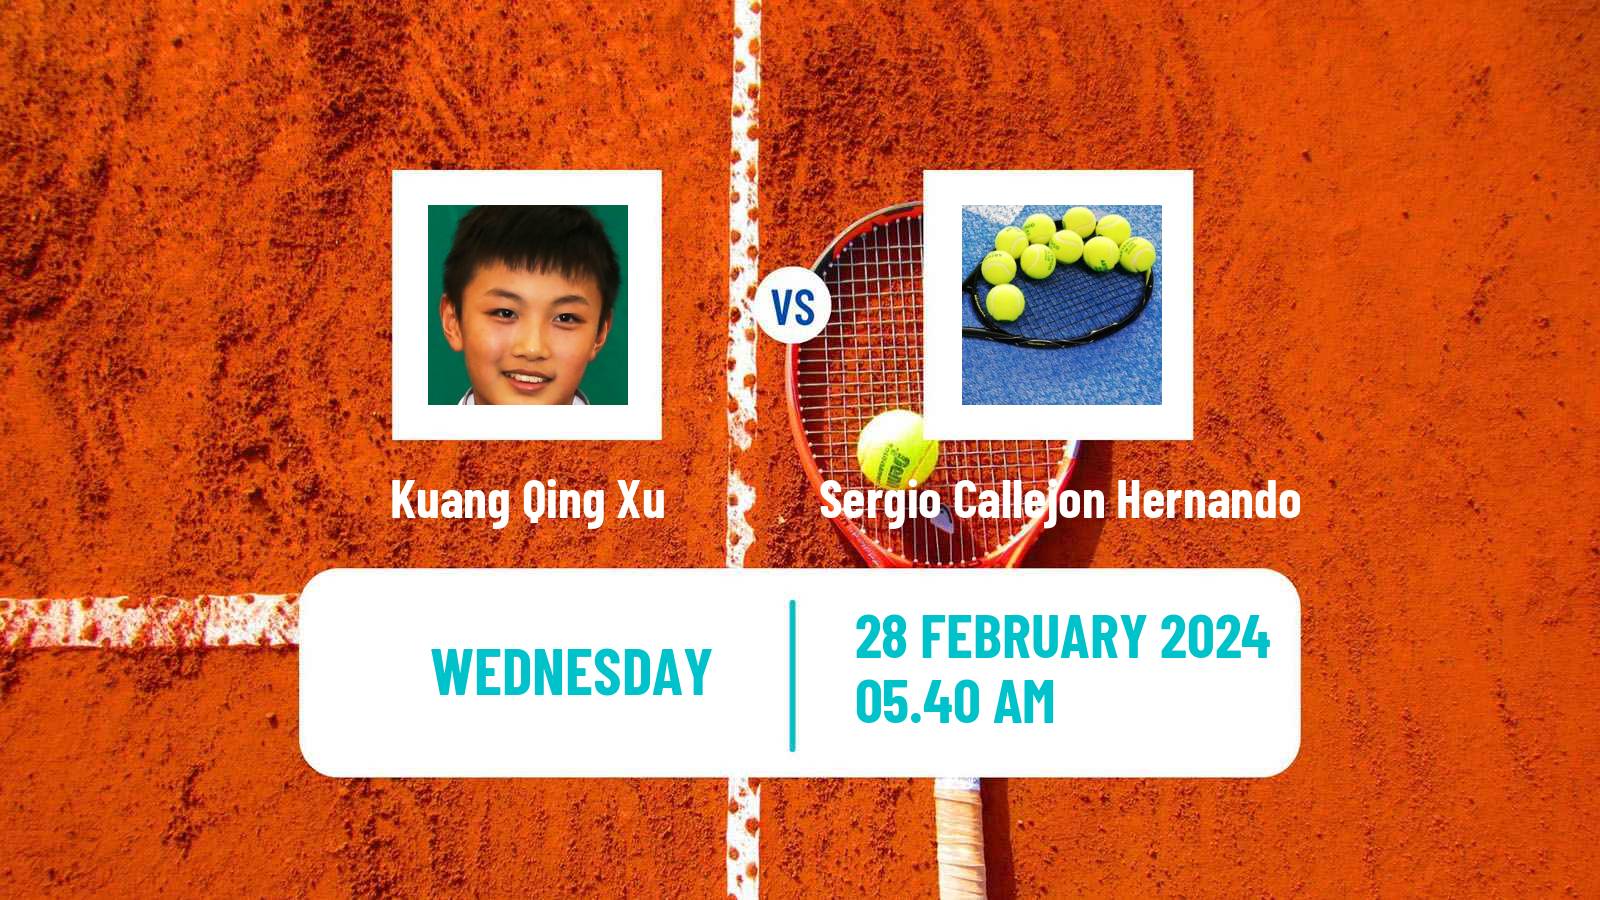 Tennis ITF M15 Villena 2 Men Kuang Qing Xu - Sergio Callejon Hernando